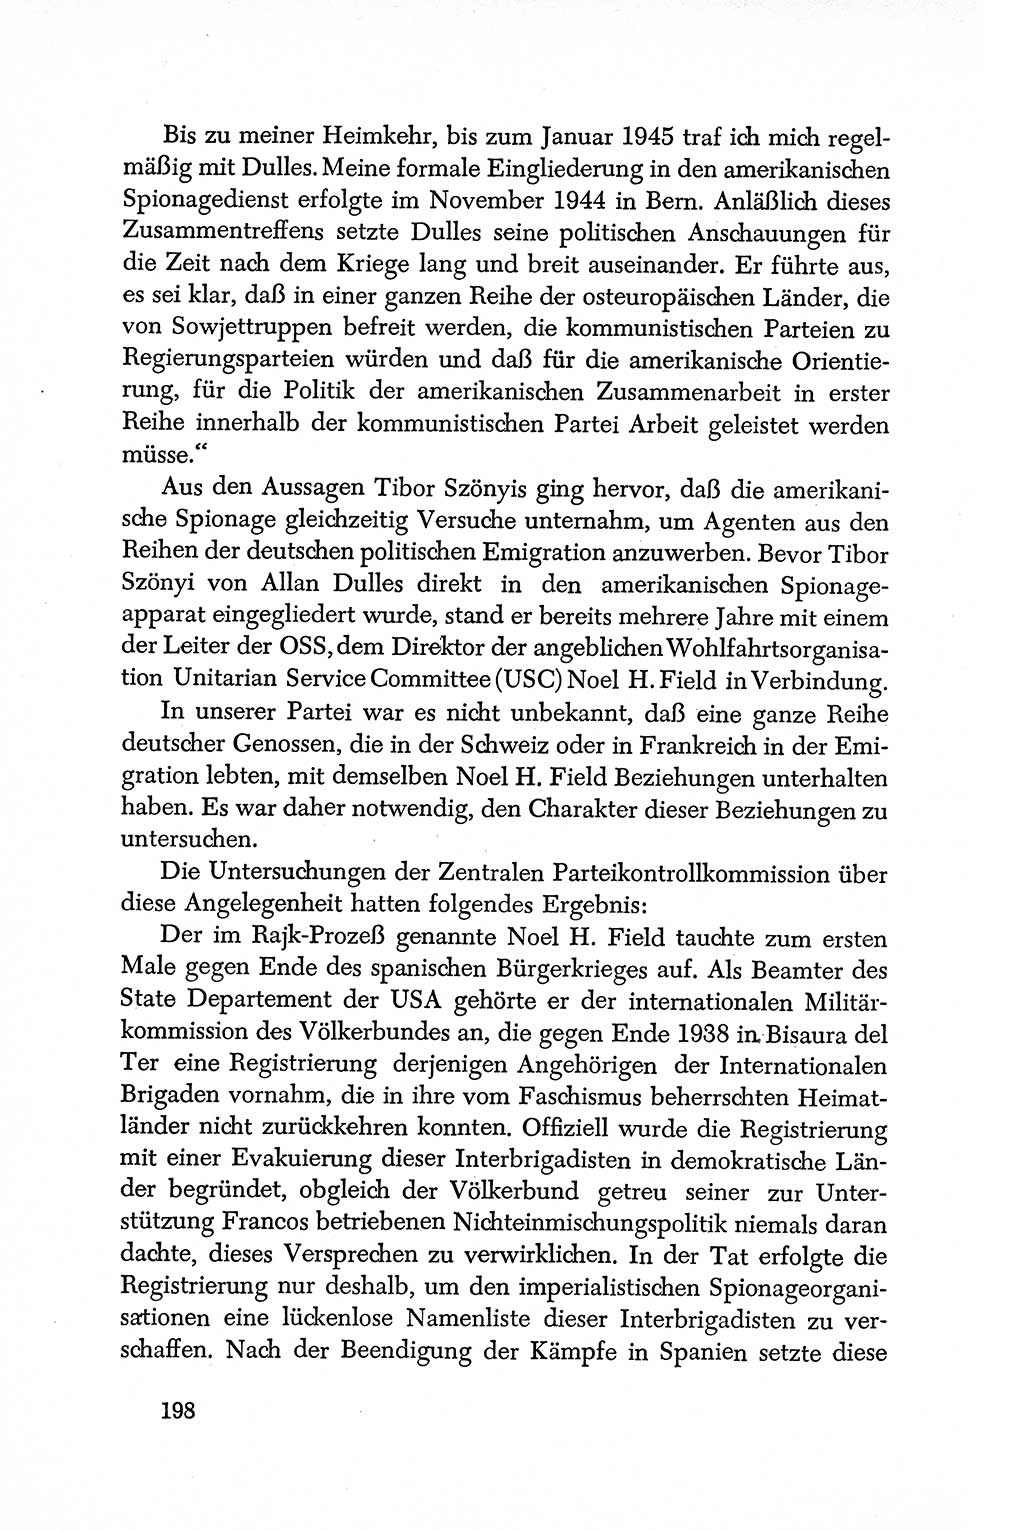 Dokumente der Sozialistischen Einheitspartei Deutschlands (SED) [Deutsche Demokratische Republik (DDR)] 1950-1952, Seite 198 (Dok. SED DDR 1950-1952, S. 198)